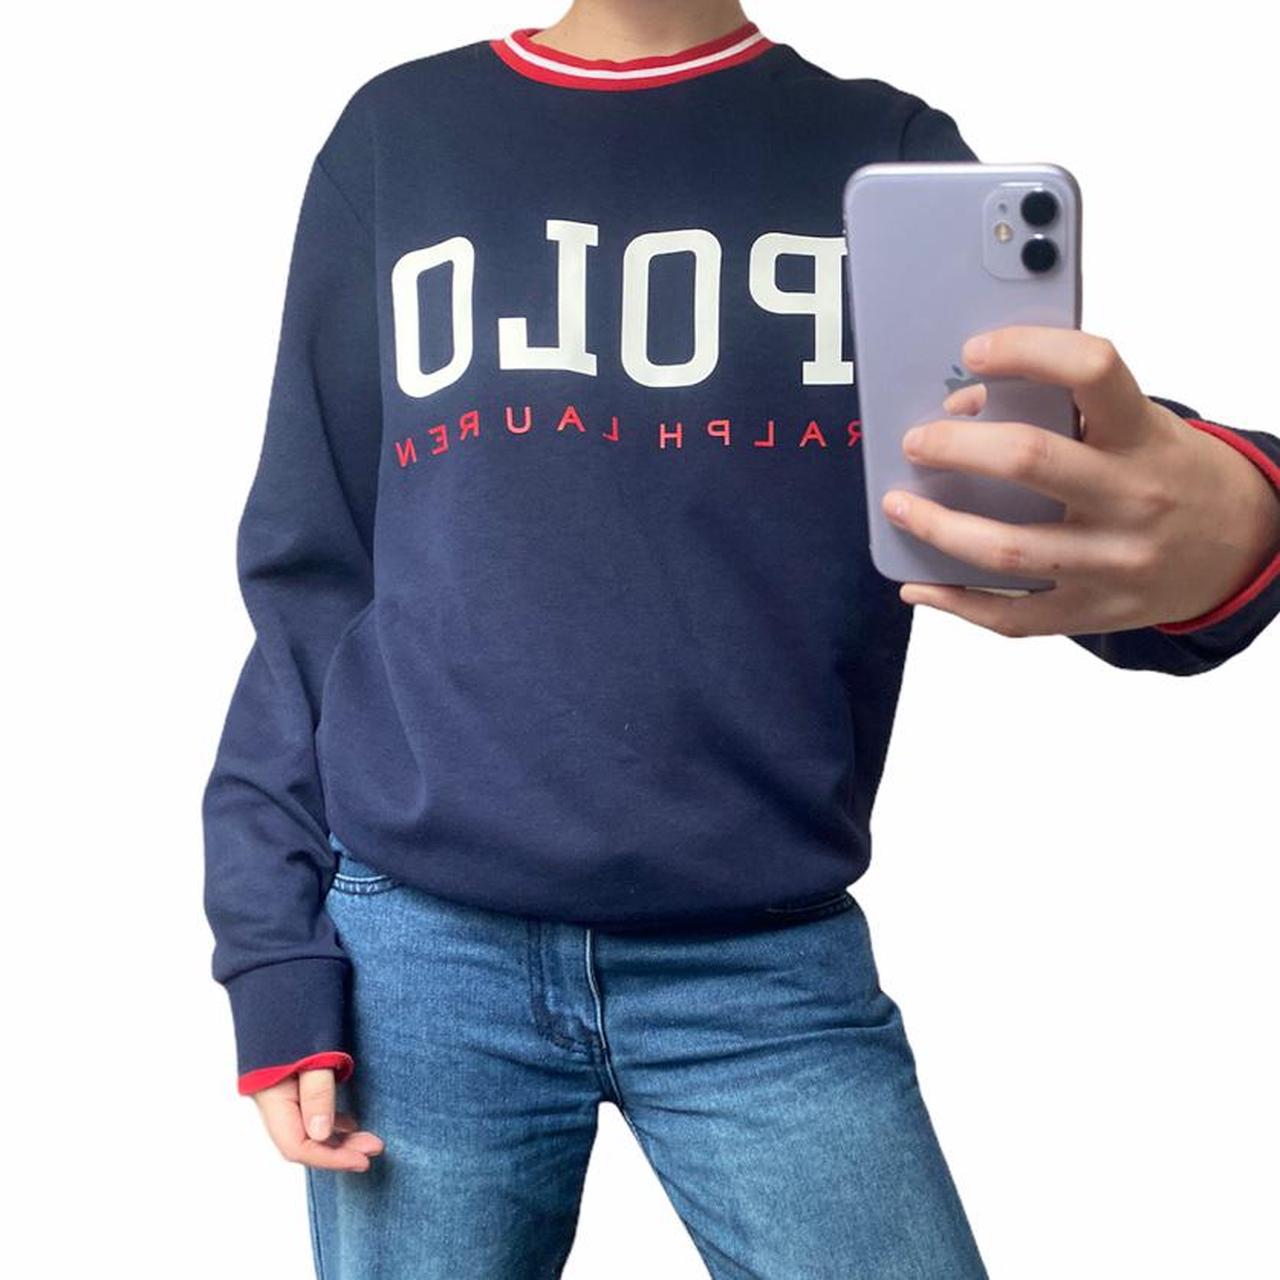 Product Image 1 - Men’s Polo Ralph Lauren sweatshirt